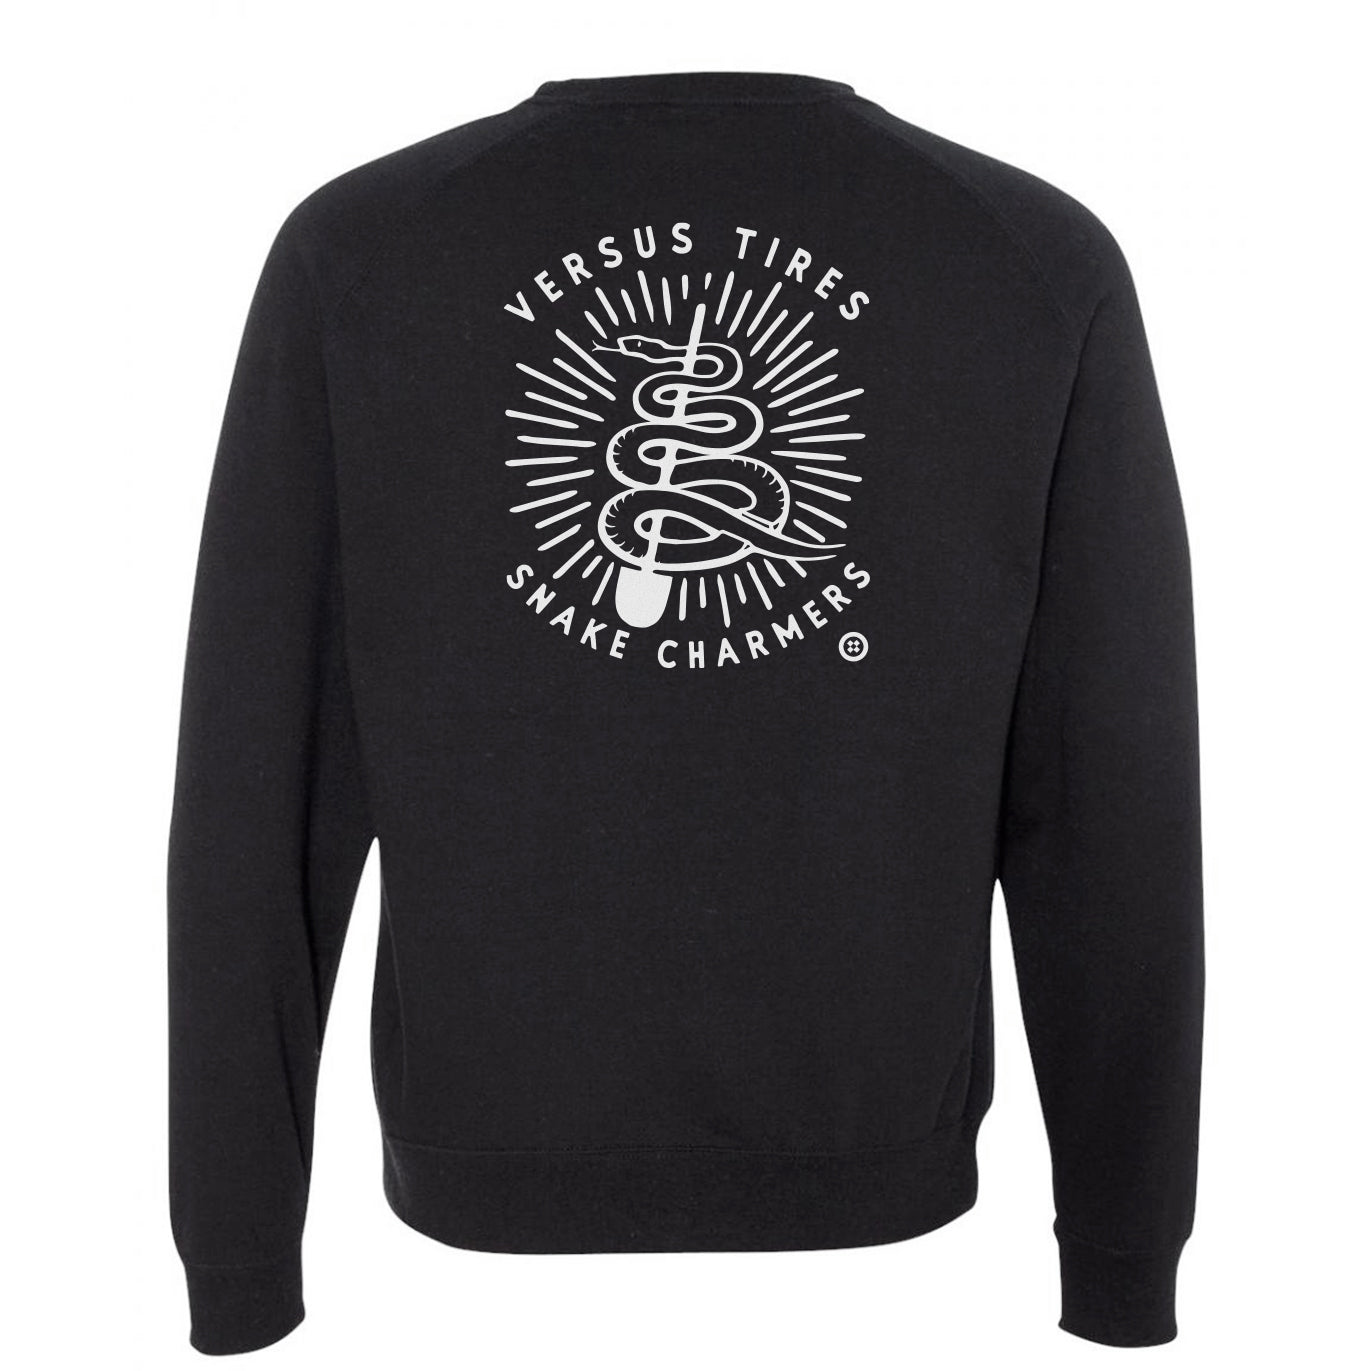 Versus Black crewneck sweatshirt with "Snakecharmer" design